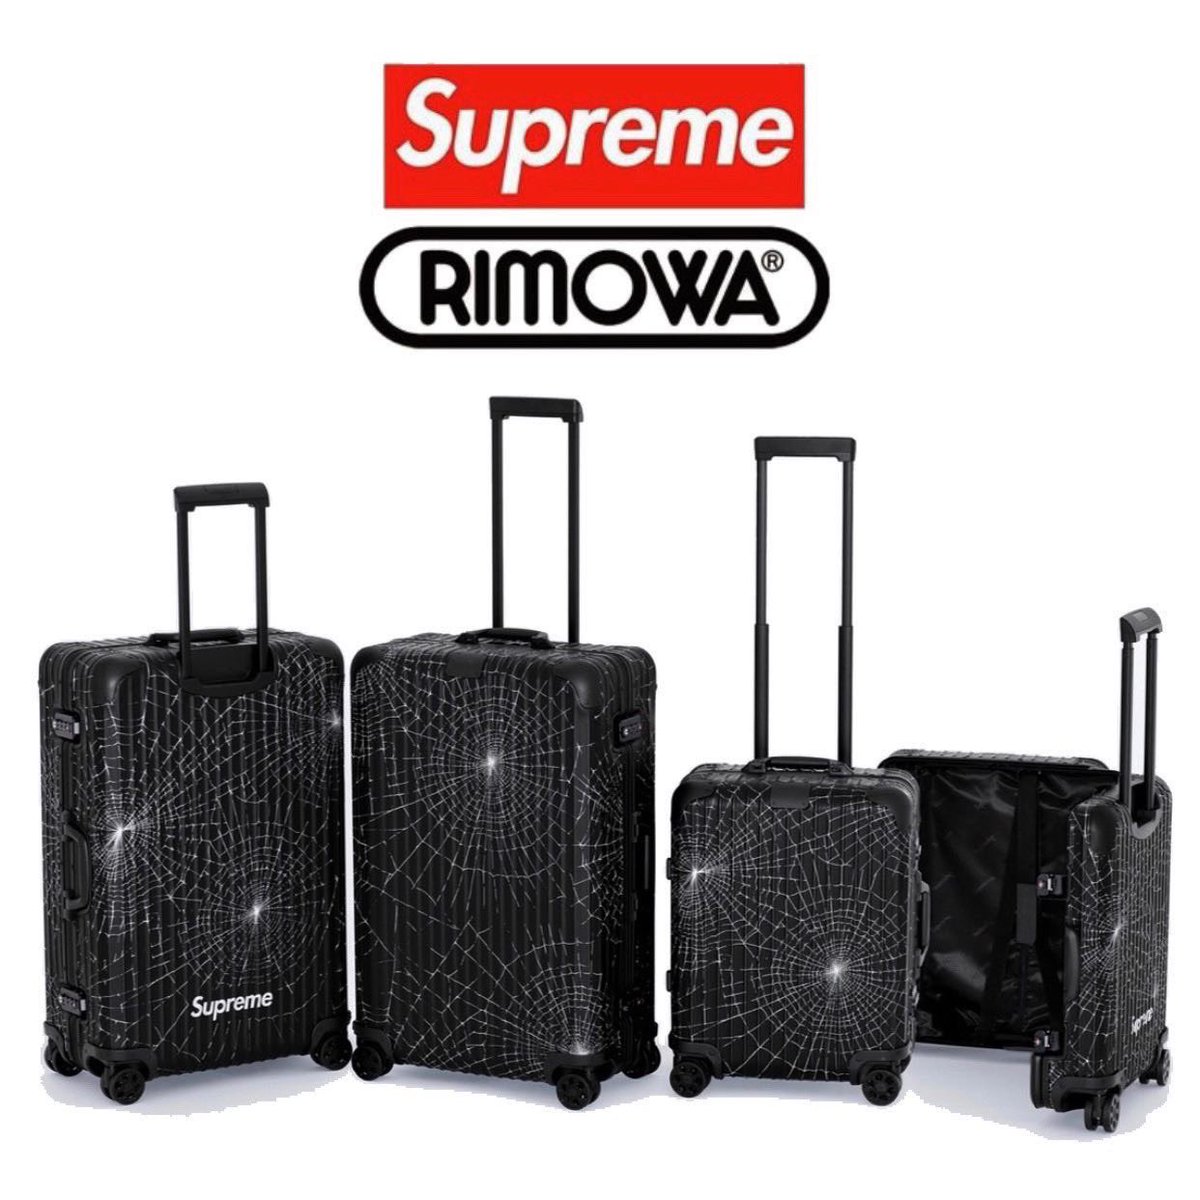 supreme rimowa 2019